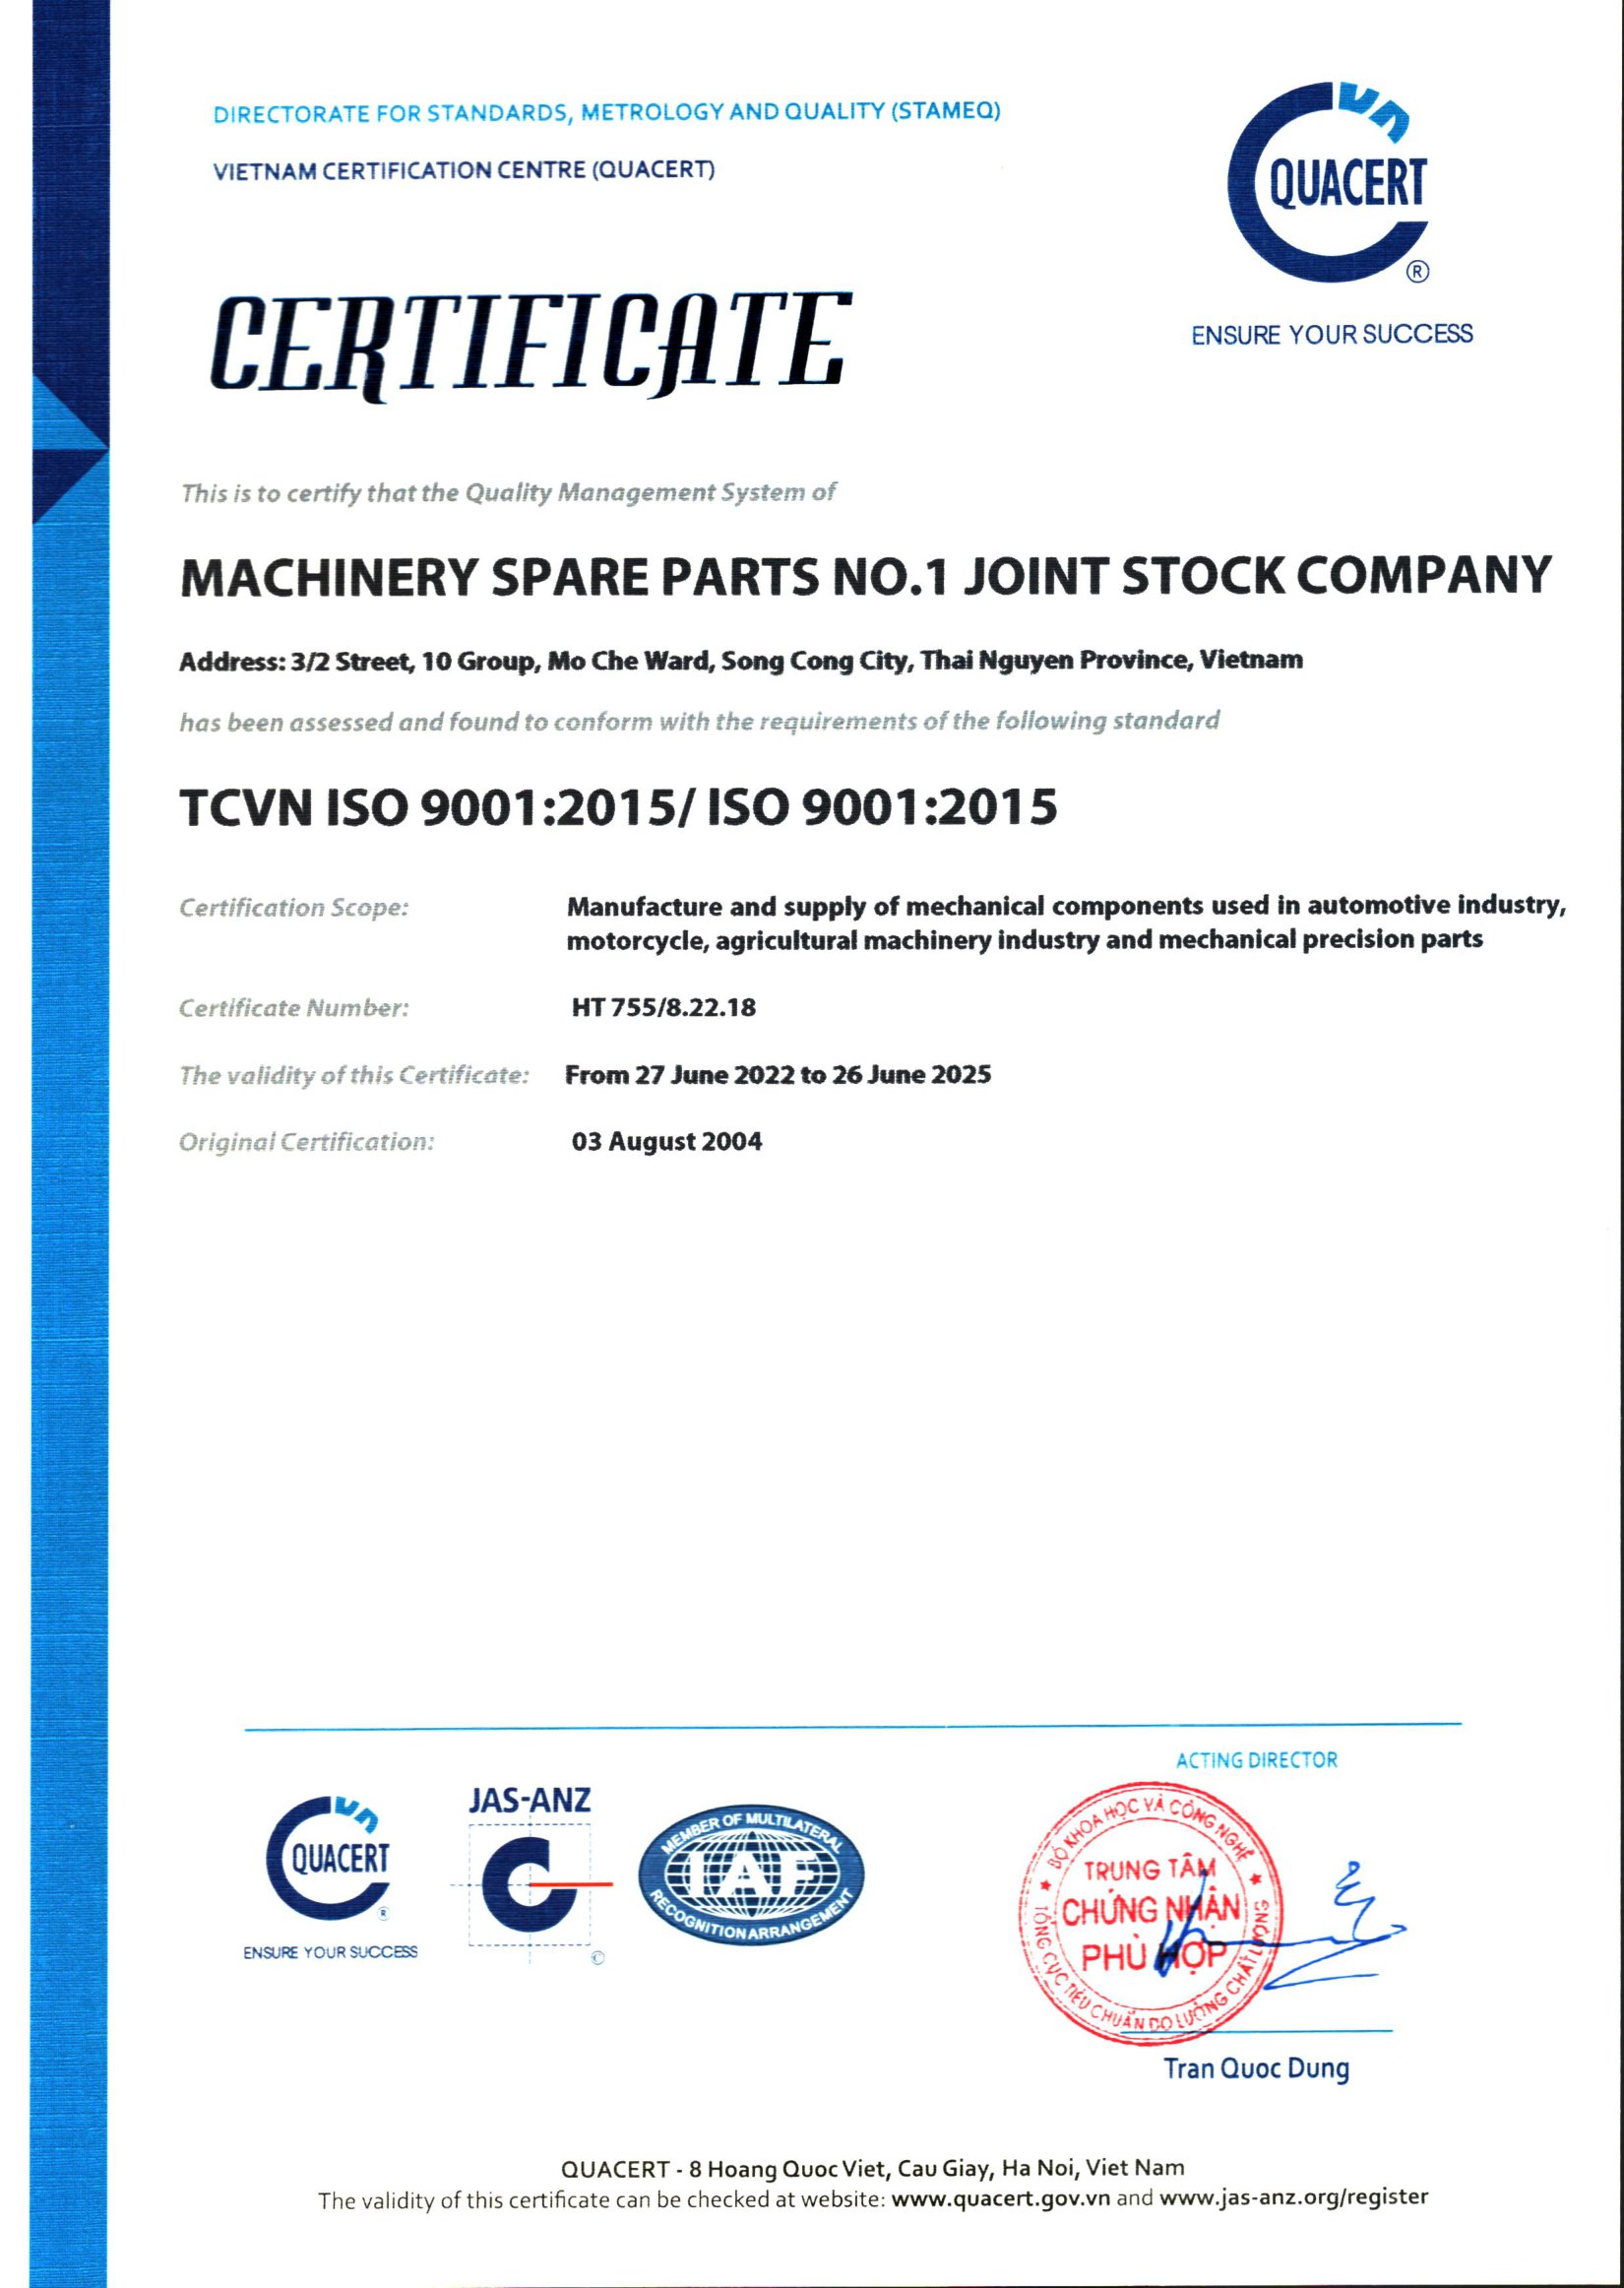 ISO 9001 - Công ty cổ phần phụ tùng máy số 1